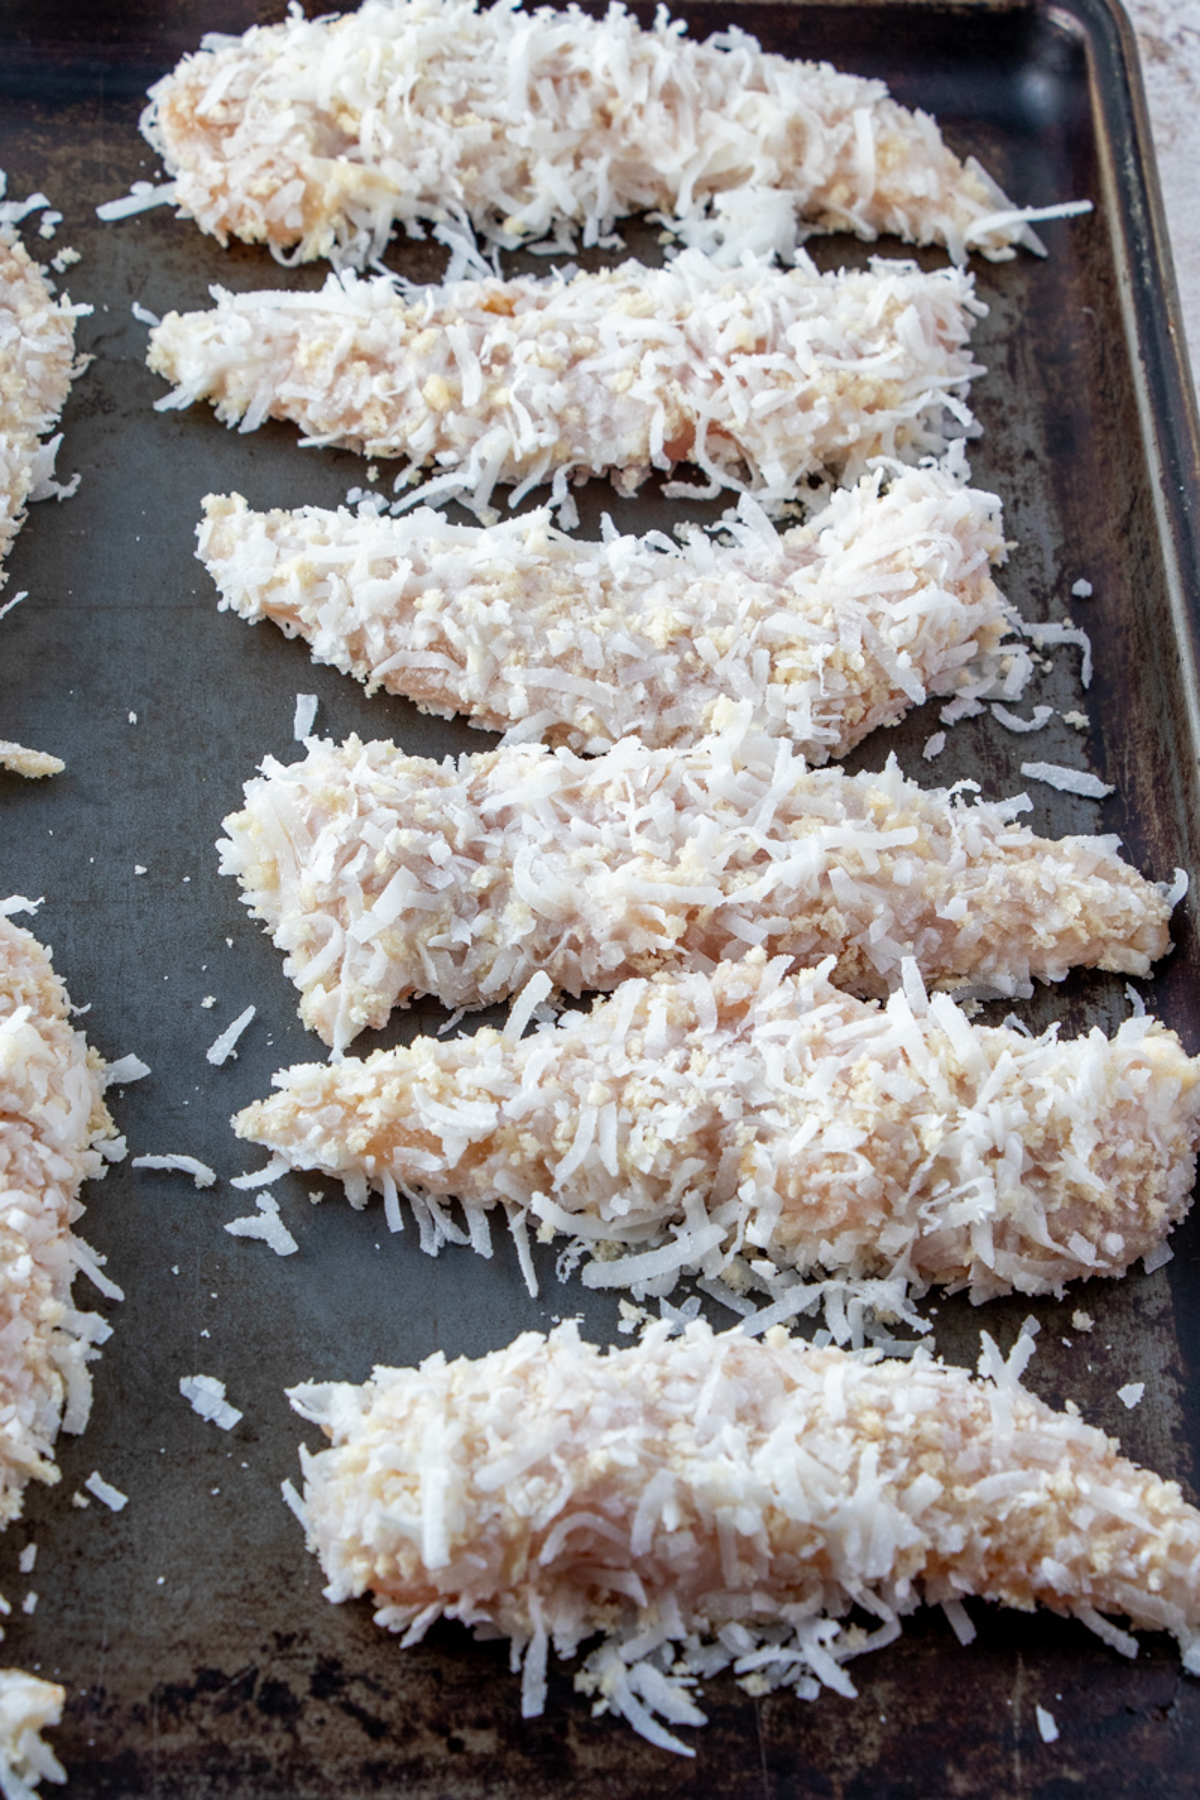 coconut breaded chicken tenders on a baking sheet